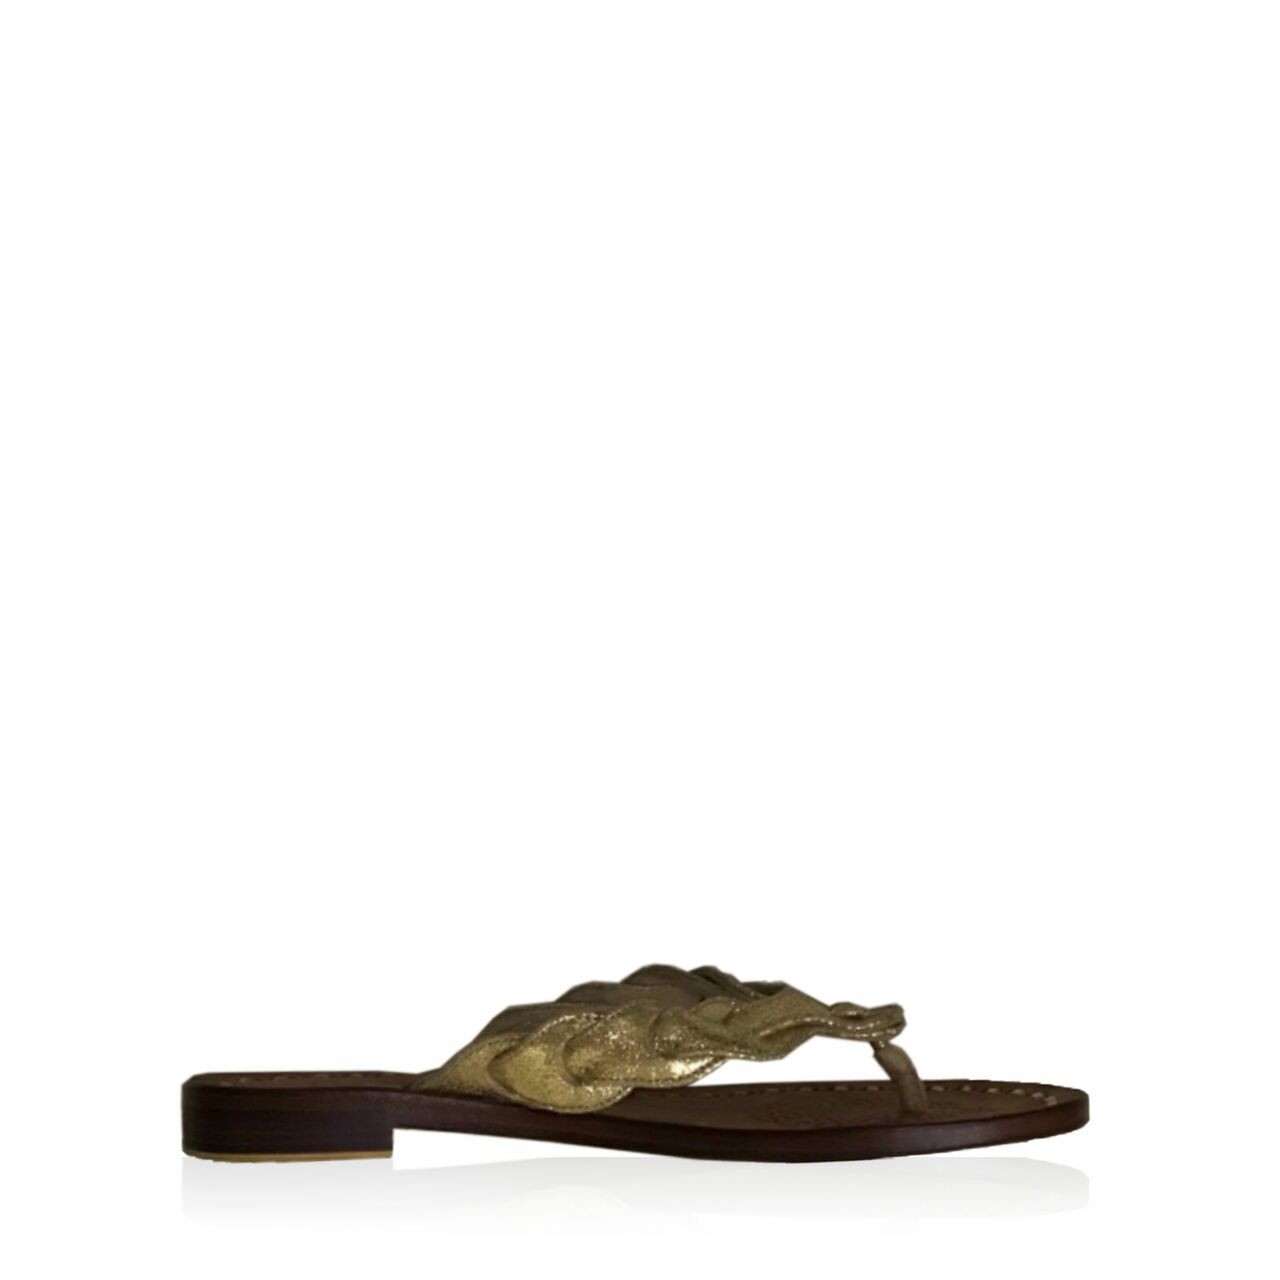 Niluh Djelantik Brown & Gold Organic Sandals